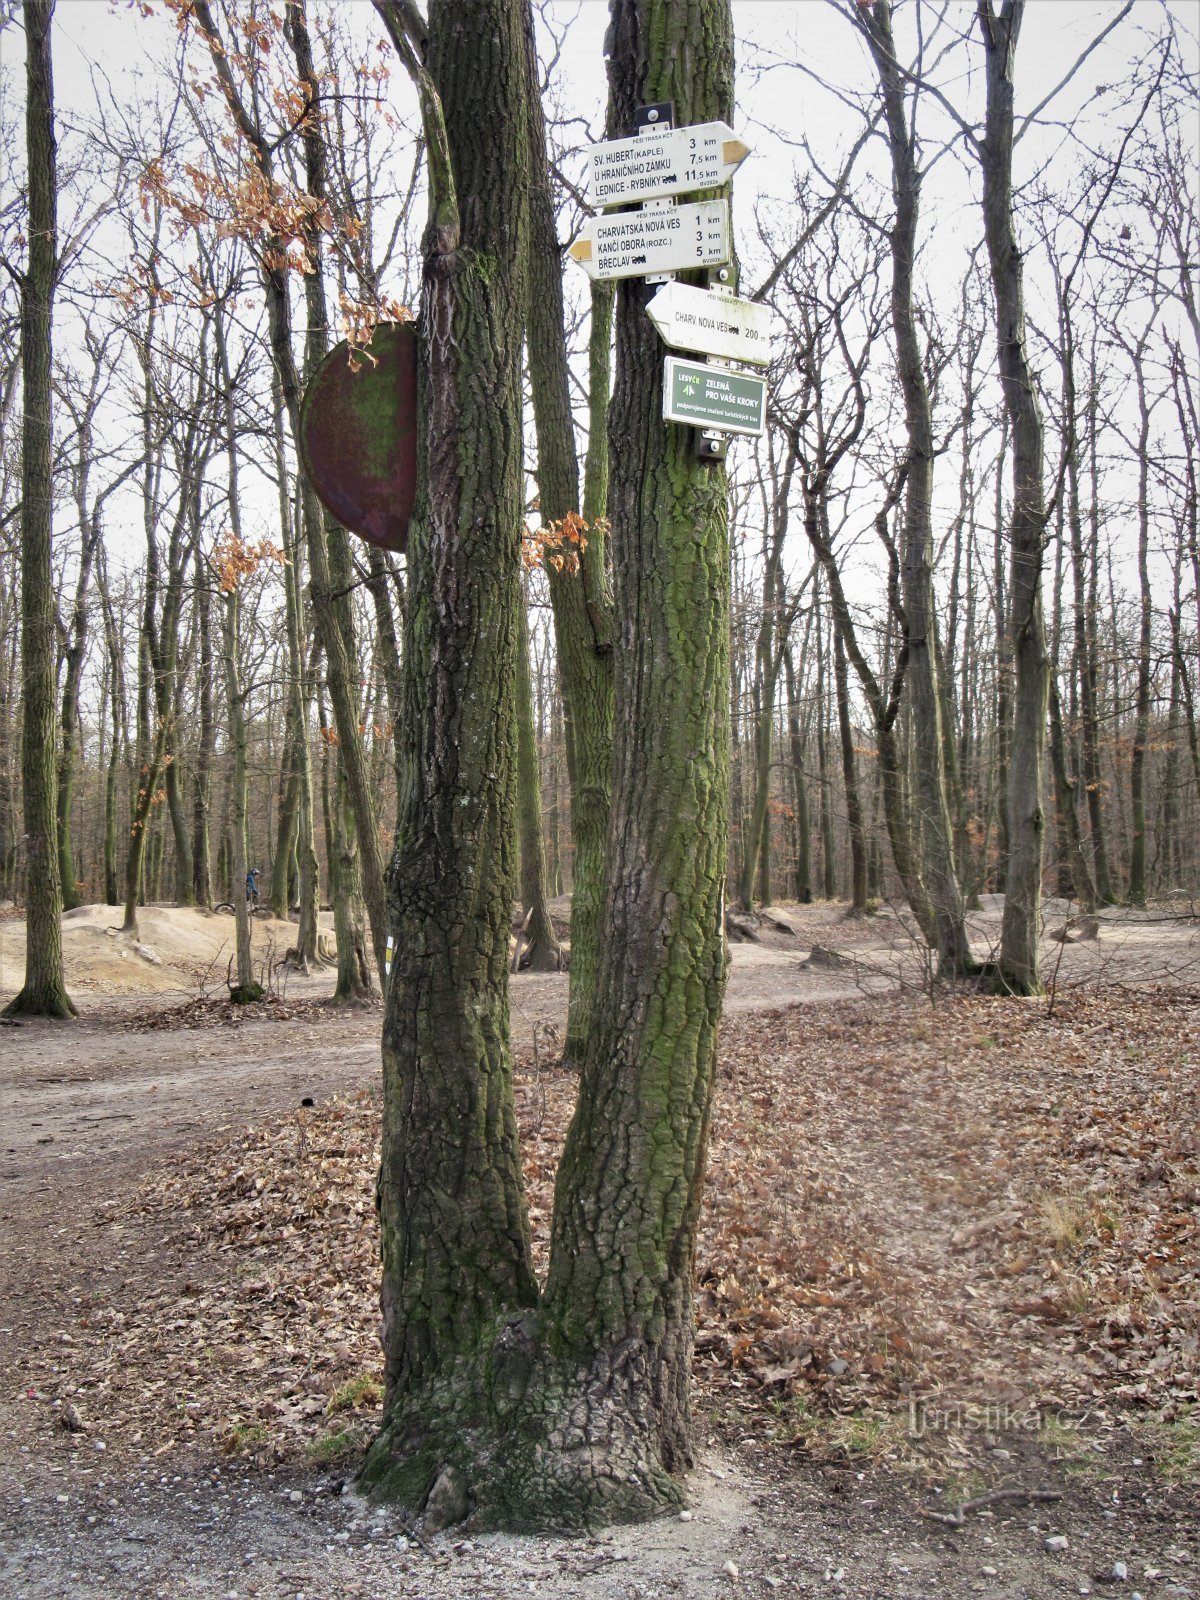 Turistkorsningen Charvátská Nová Ves, järnvägslinjen, ligger i utkanten av skogen